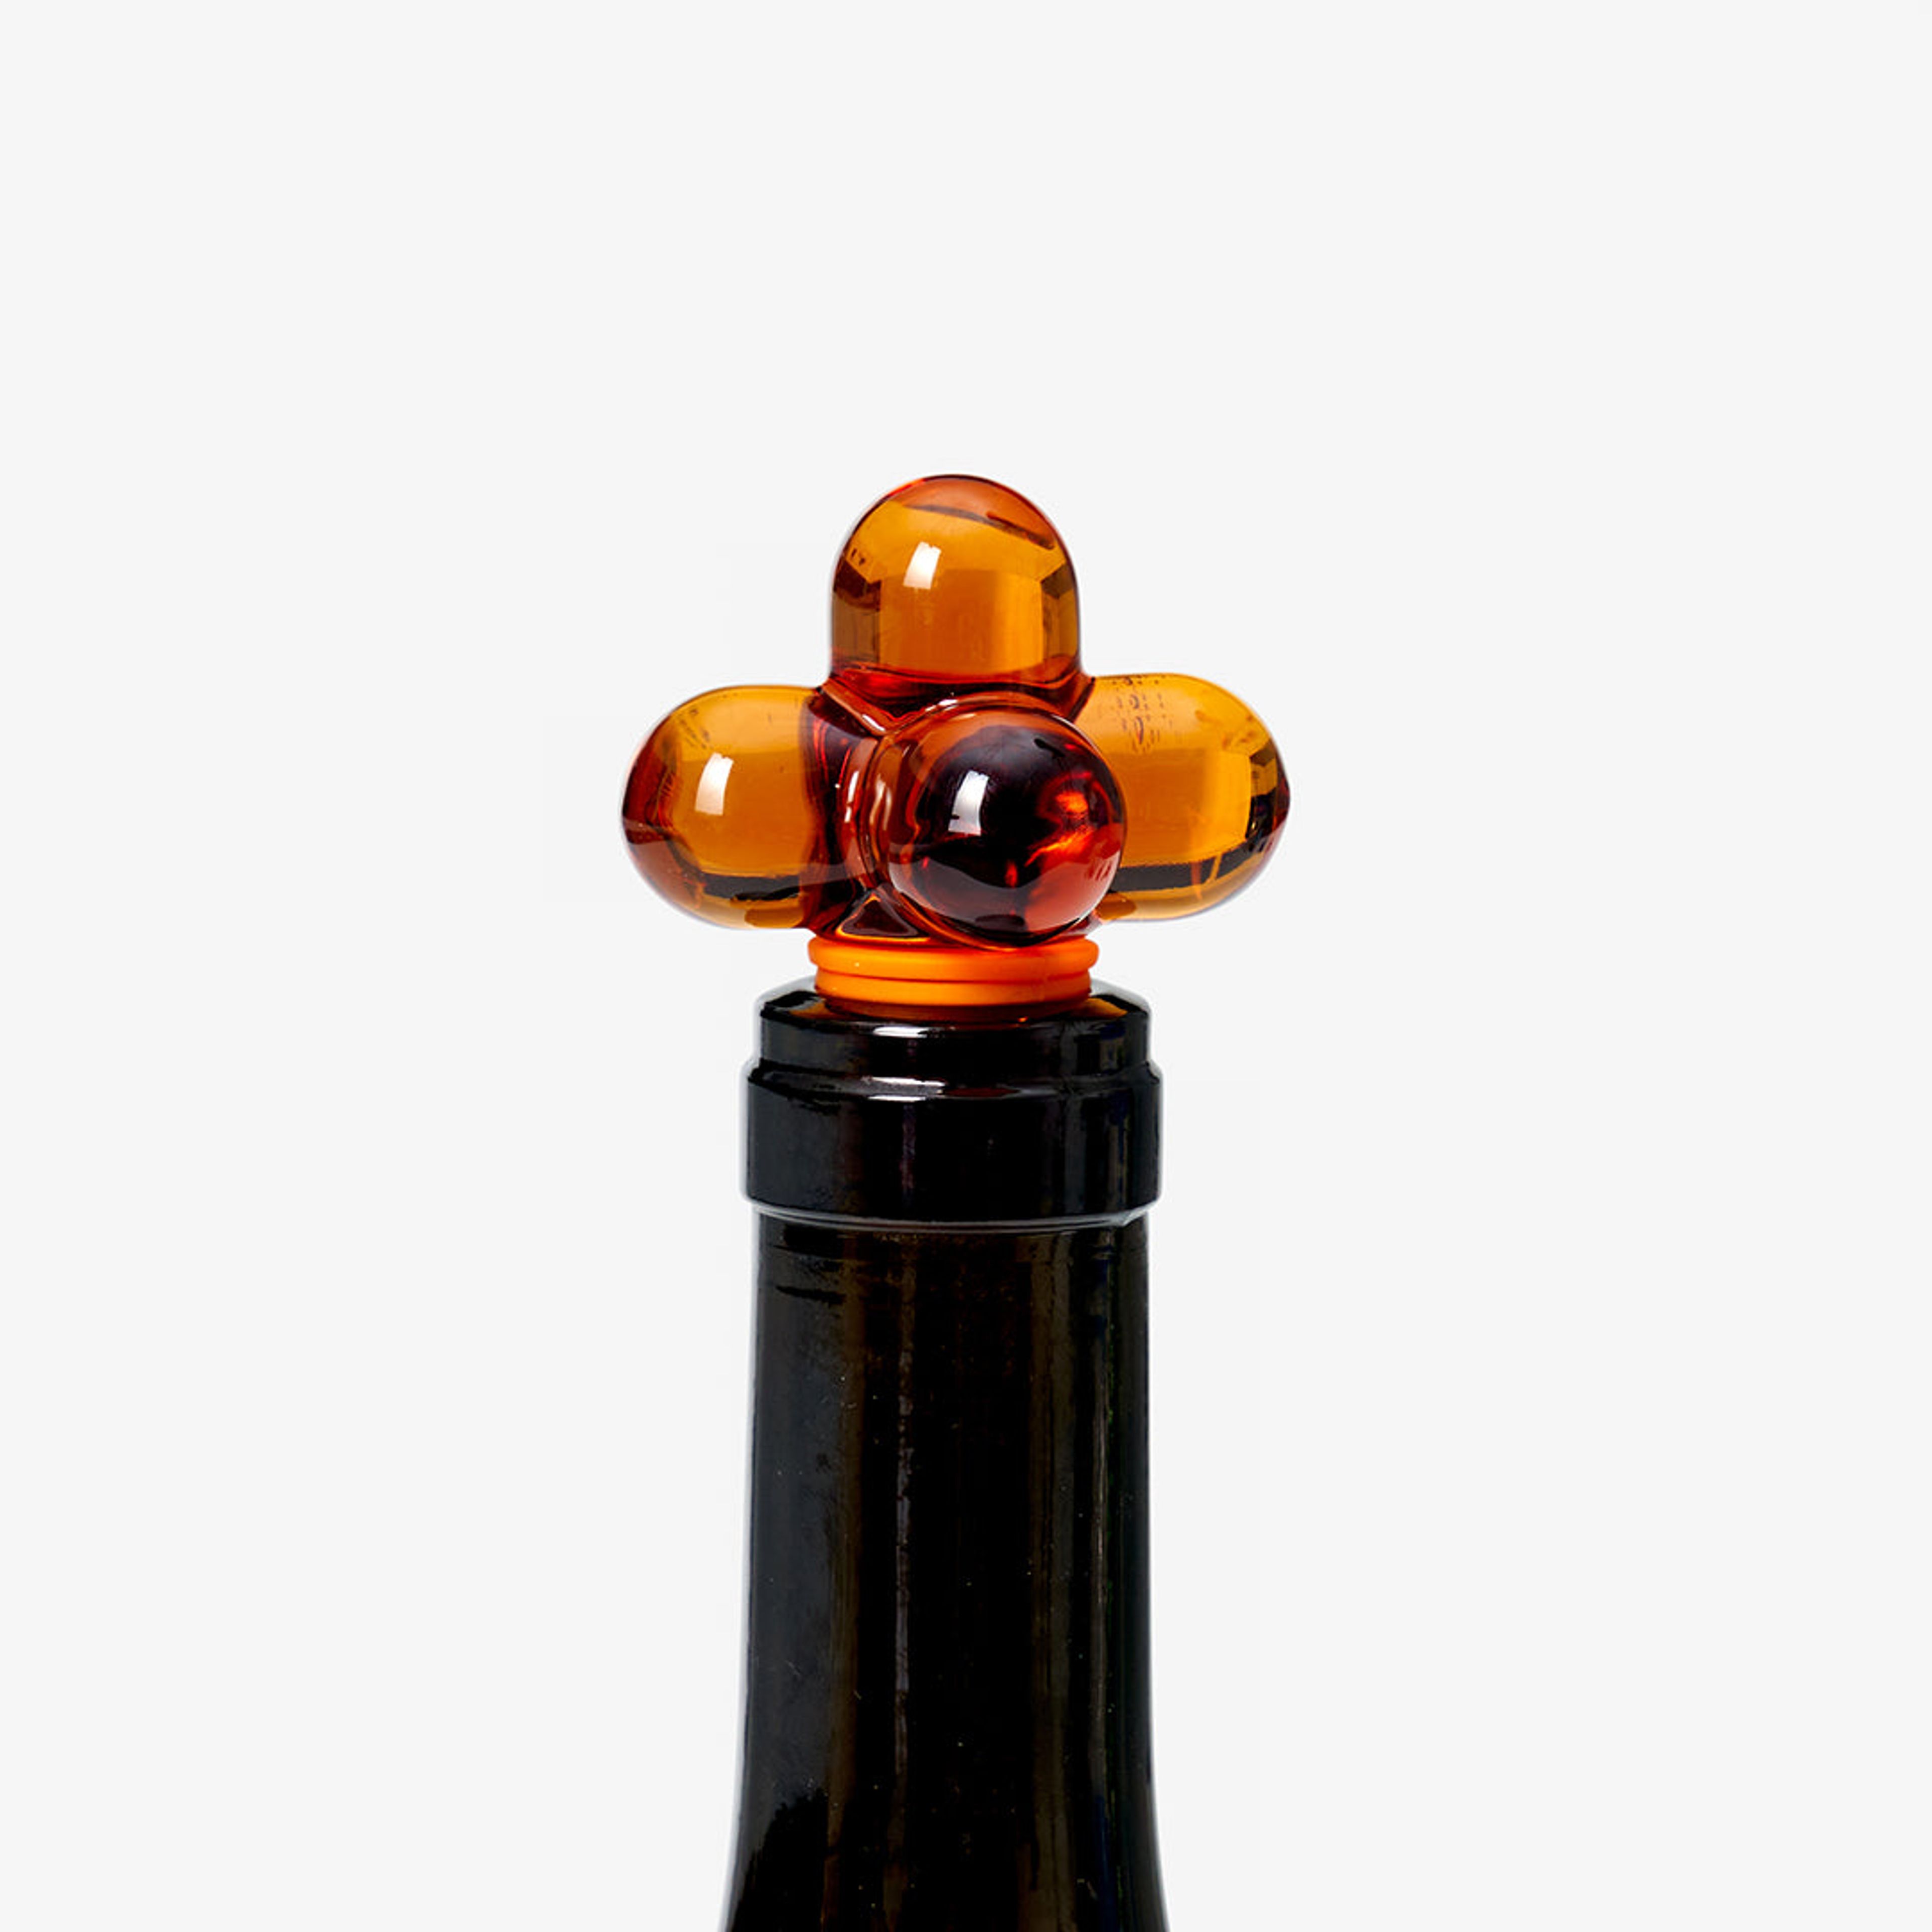 Hobknob Bottle Stopper